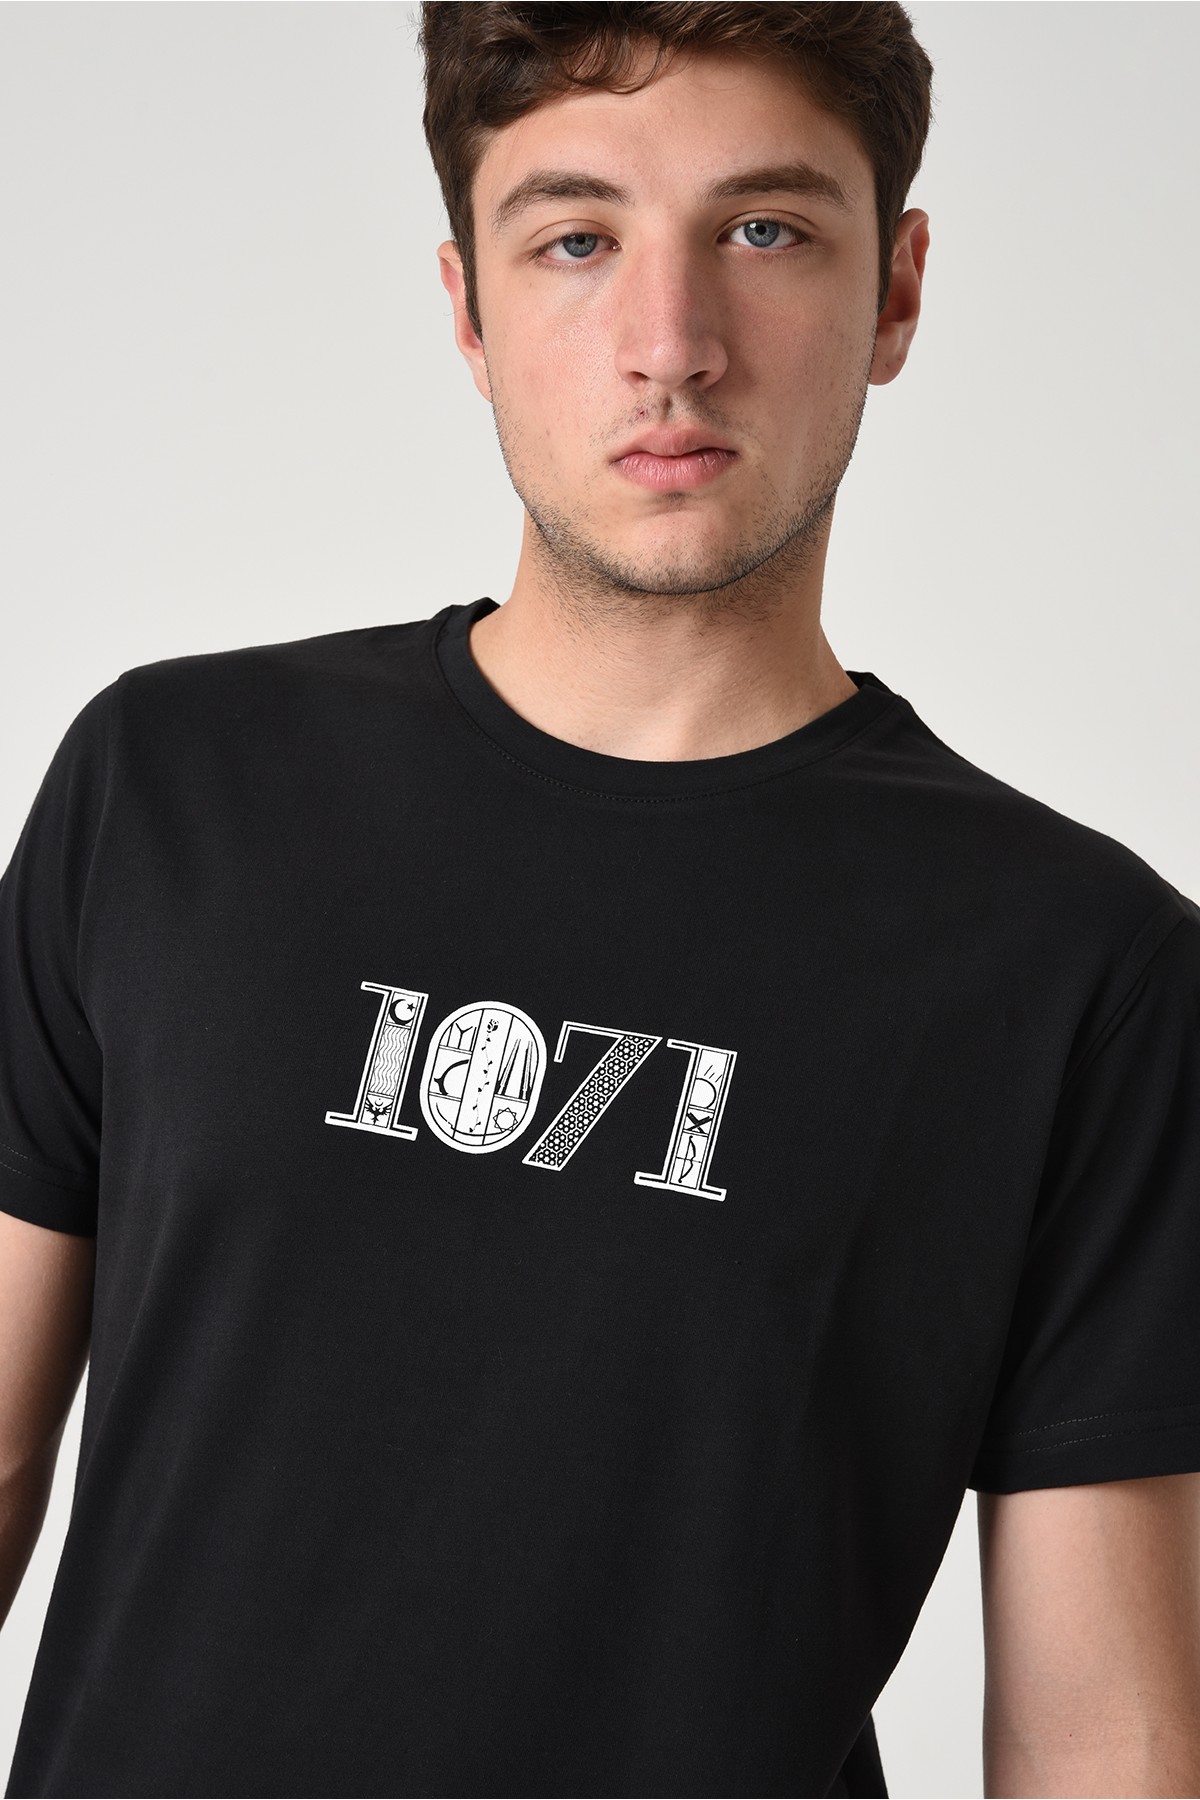 1071 Tasarım Pamuk Bisiklet Yaka Siyah T-shirt 22'